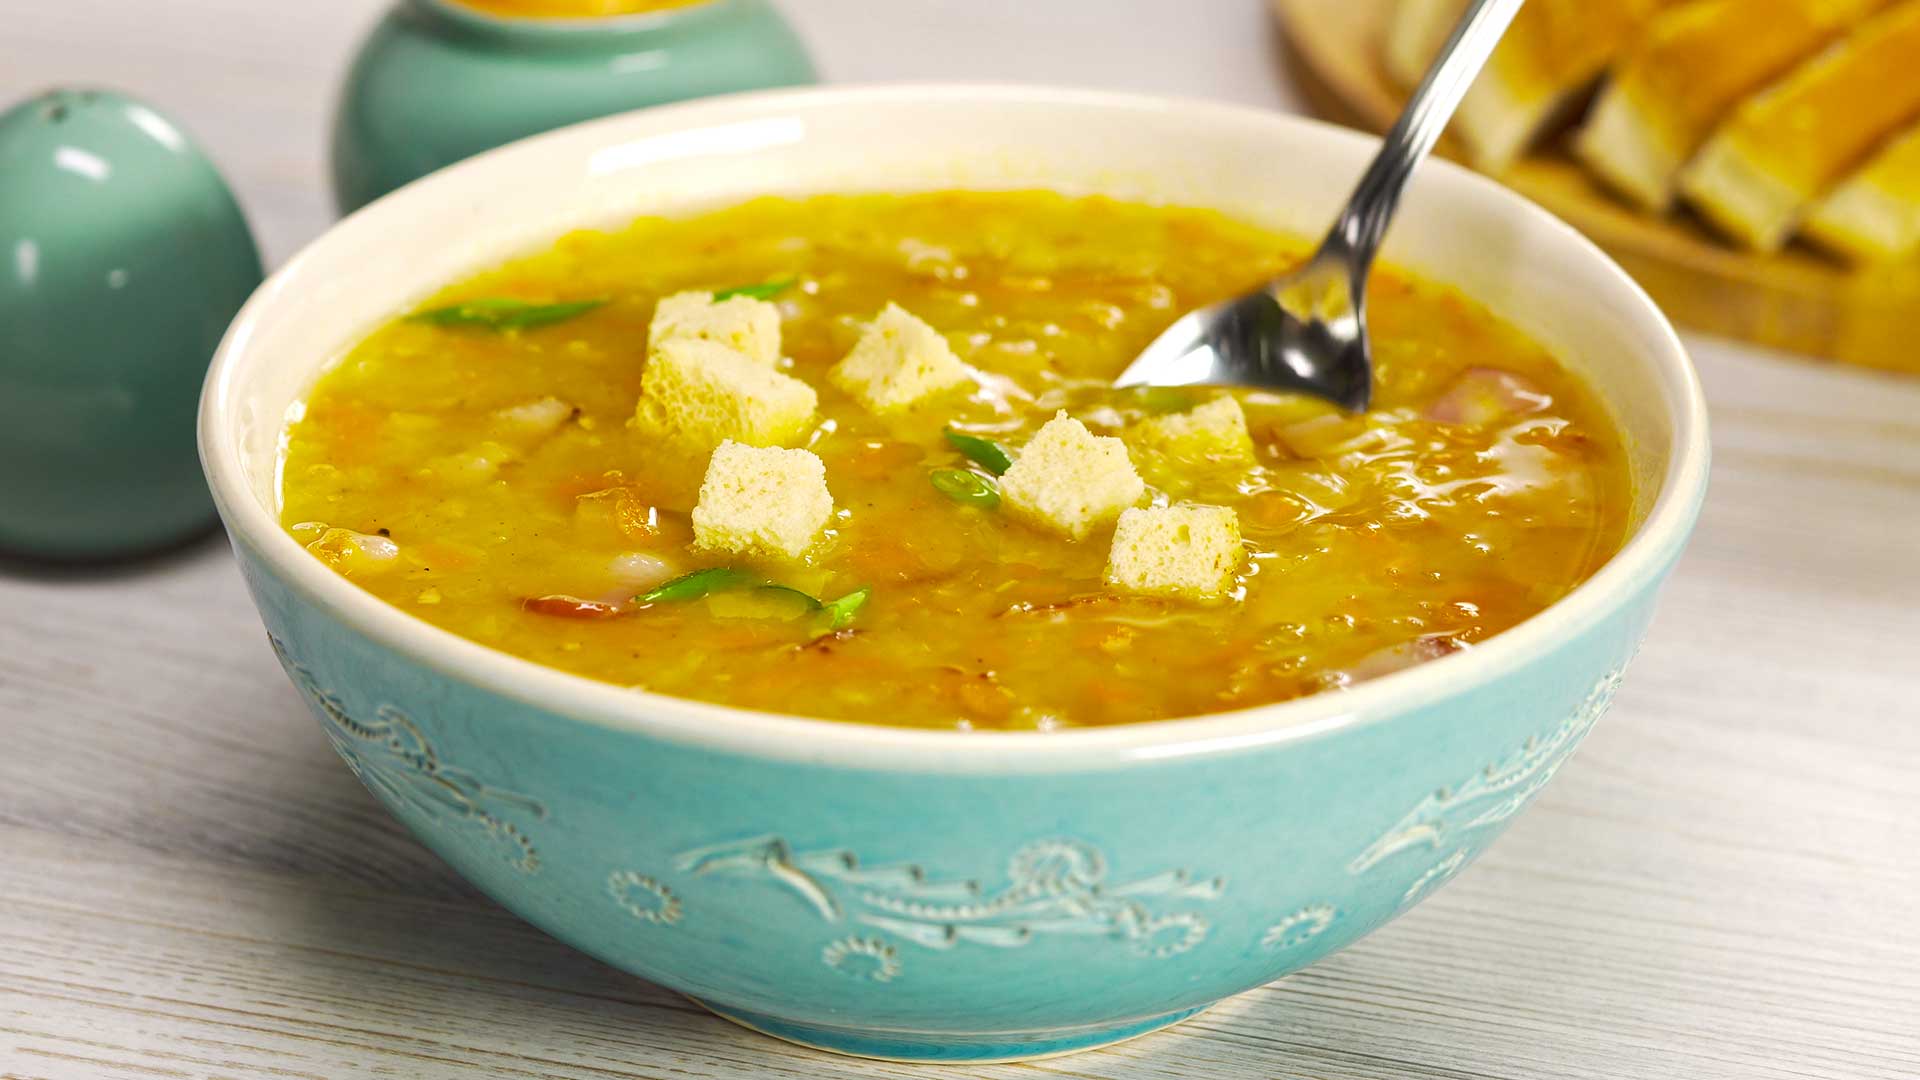 Суп гороховый с копченостями - пошаговый рецепт с фото